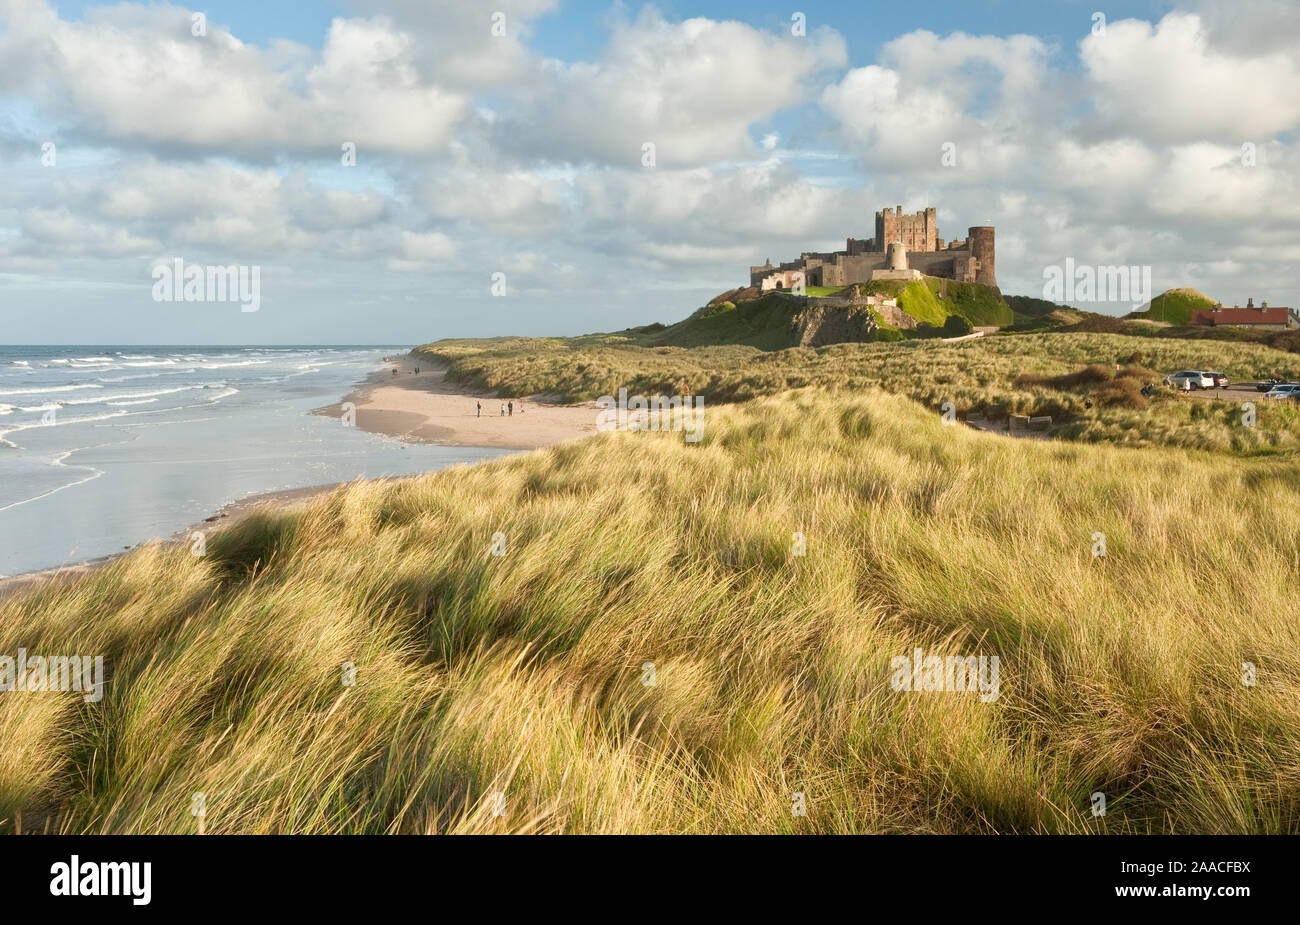 Il castello di Bamburgh arroccato su balze rocciose che si affaccia su dune costiere, la spiaggia e il Mare del Nord. Northumberland, Inghilterra Foto Stock